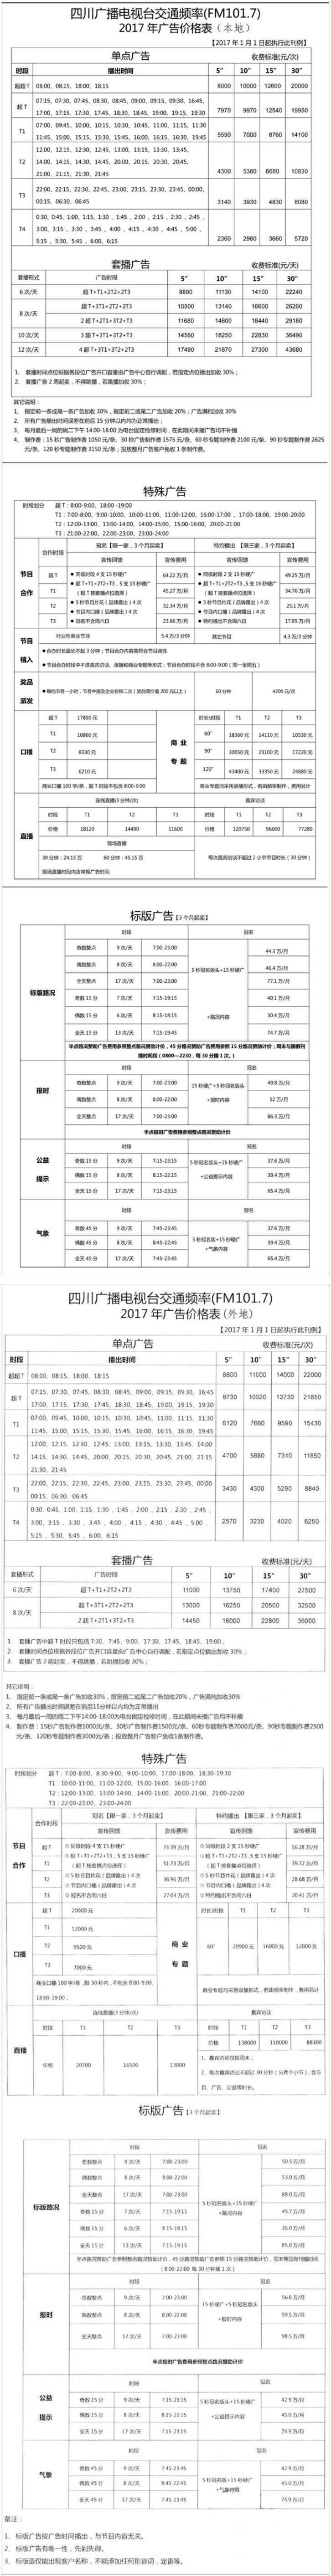 2017四川人民广播电台交通广播 FM101.7广告报价表.png